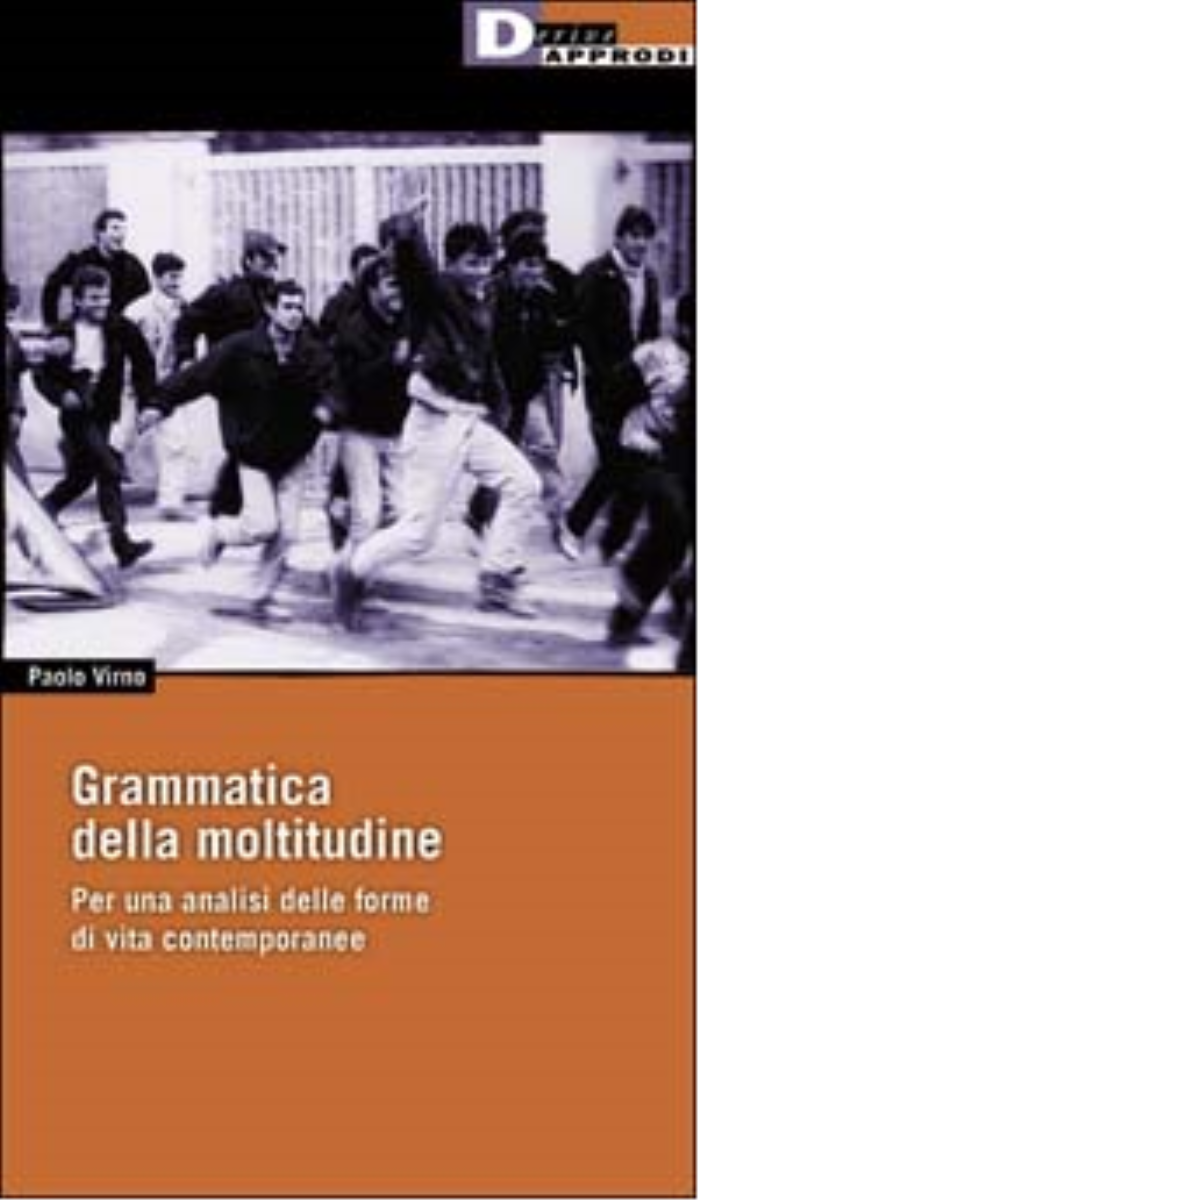 GRAMMATICA DELLA MOLTITUDINE. di PAOLO VIRNO - DeriveApprodi editore,2002 libro usato